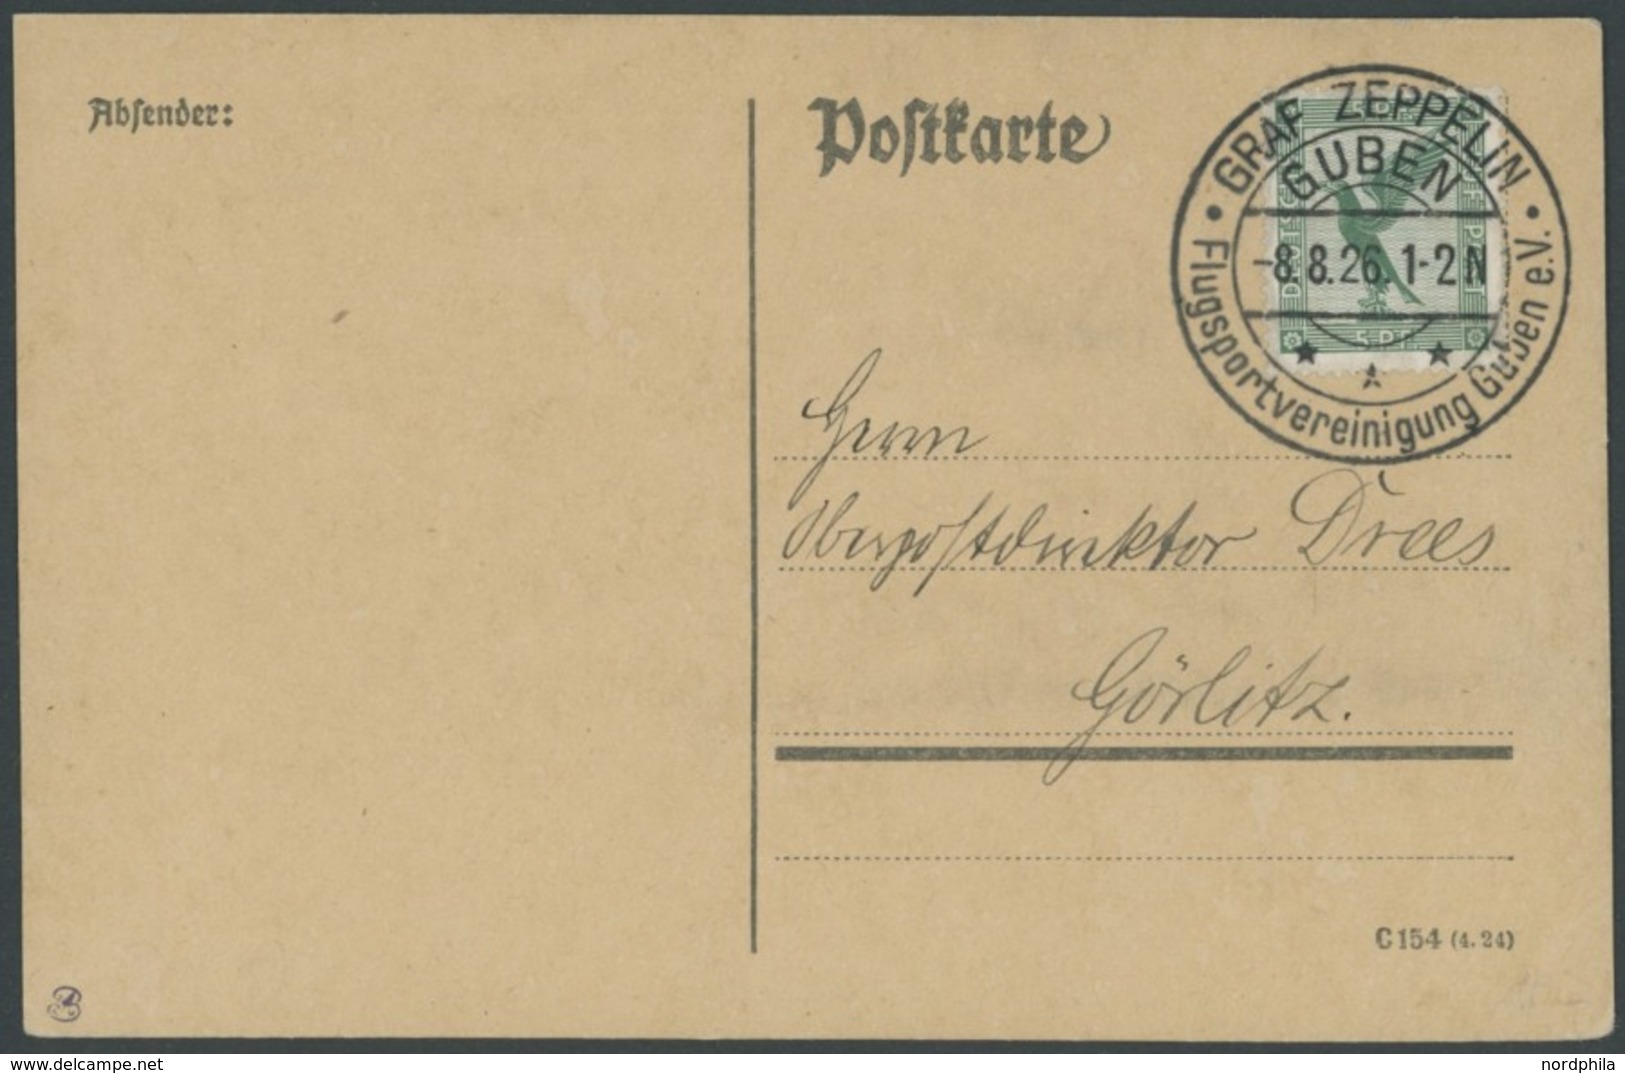 SST 1919-1932 GUBEN GRAF ZEPPELIN FLUGSPORTVEREINIGUNG, 8.8.1926, Leer Gestempelte Karte (mit Teil-Anschrift), Pracht - Covers & Documents